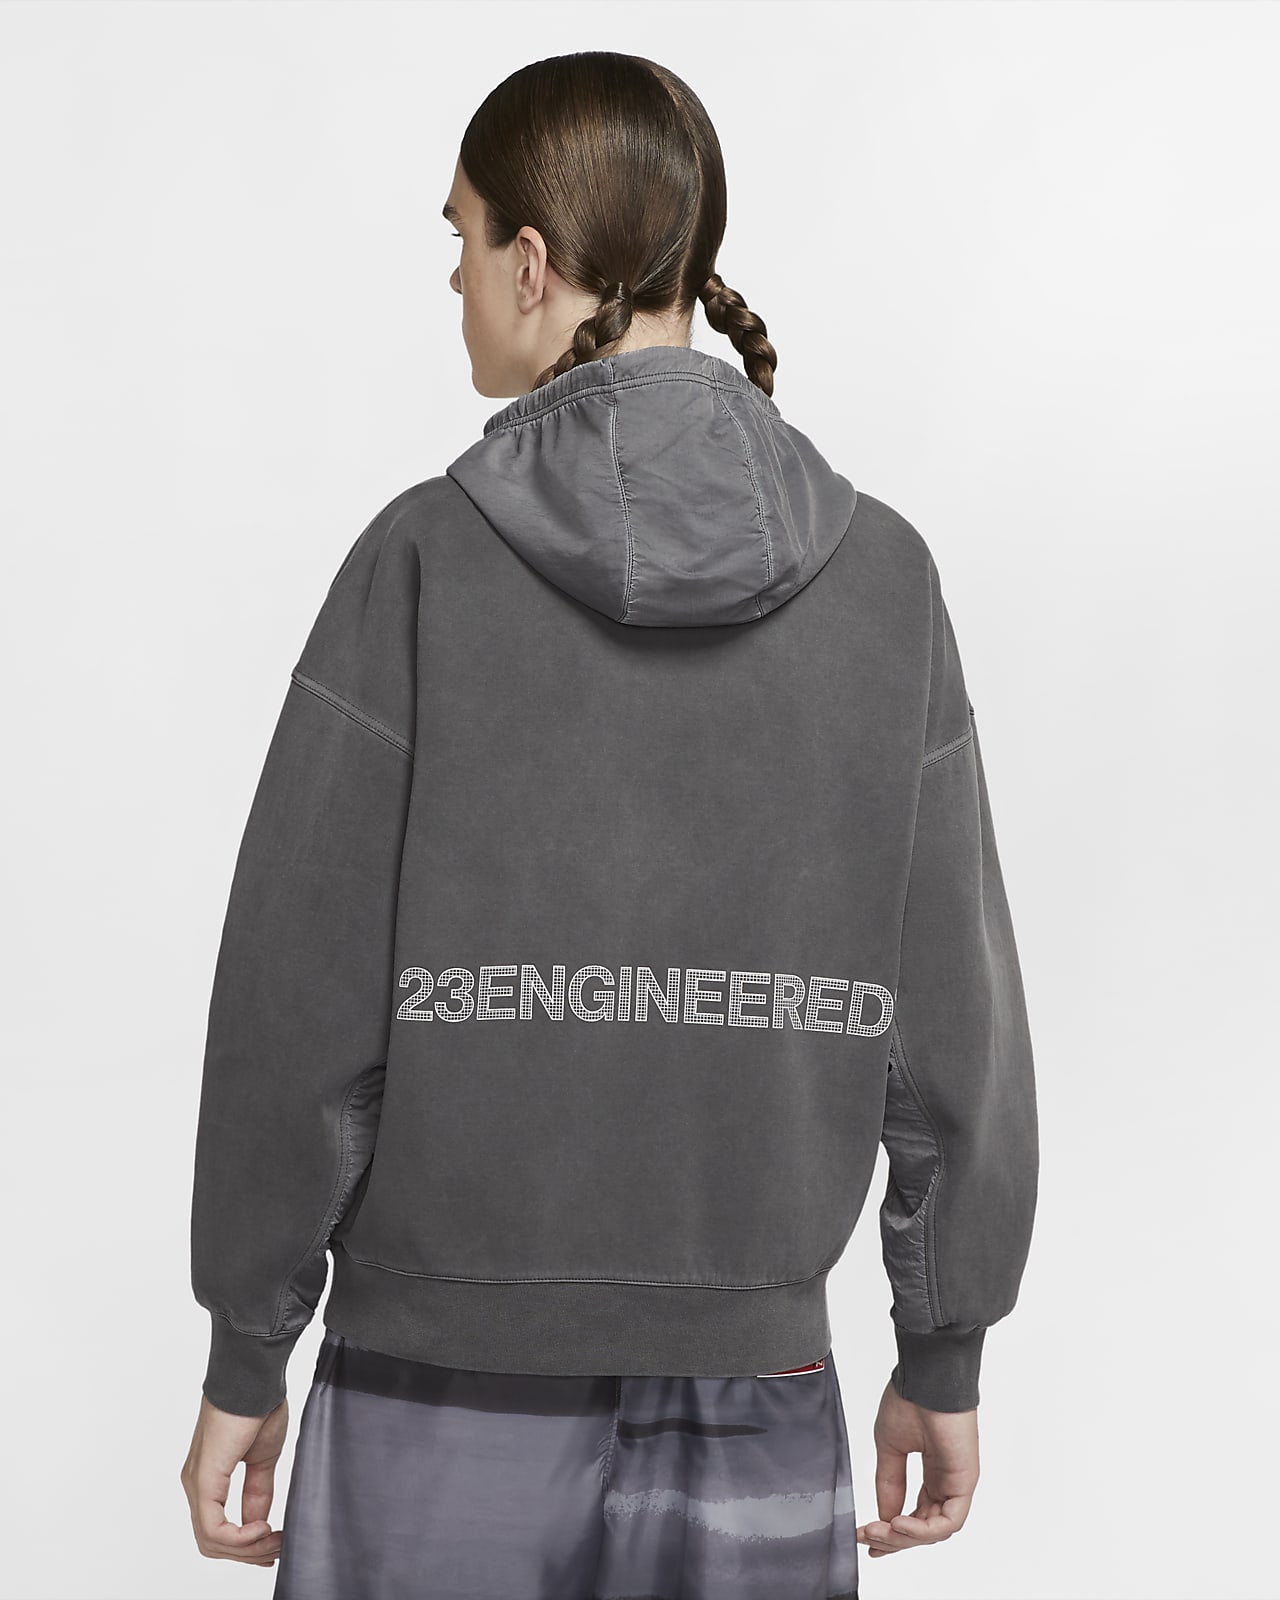 jordan 23 engineered hoodie grey